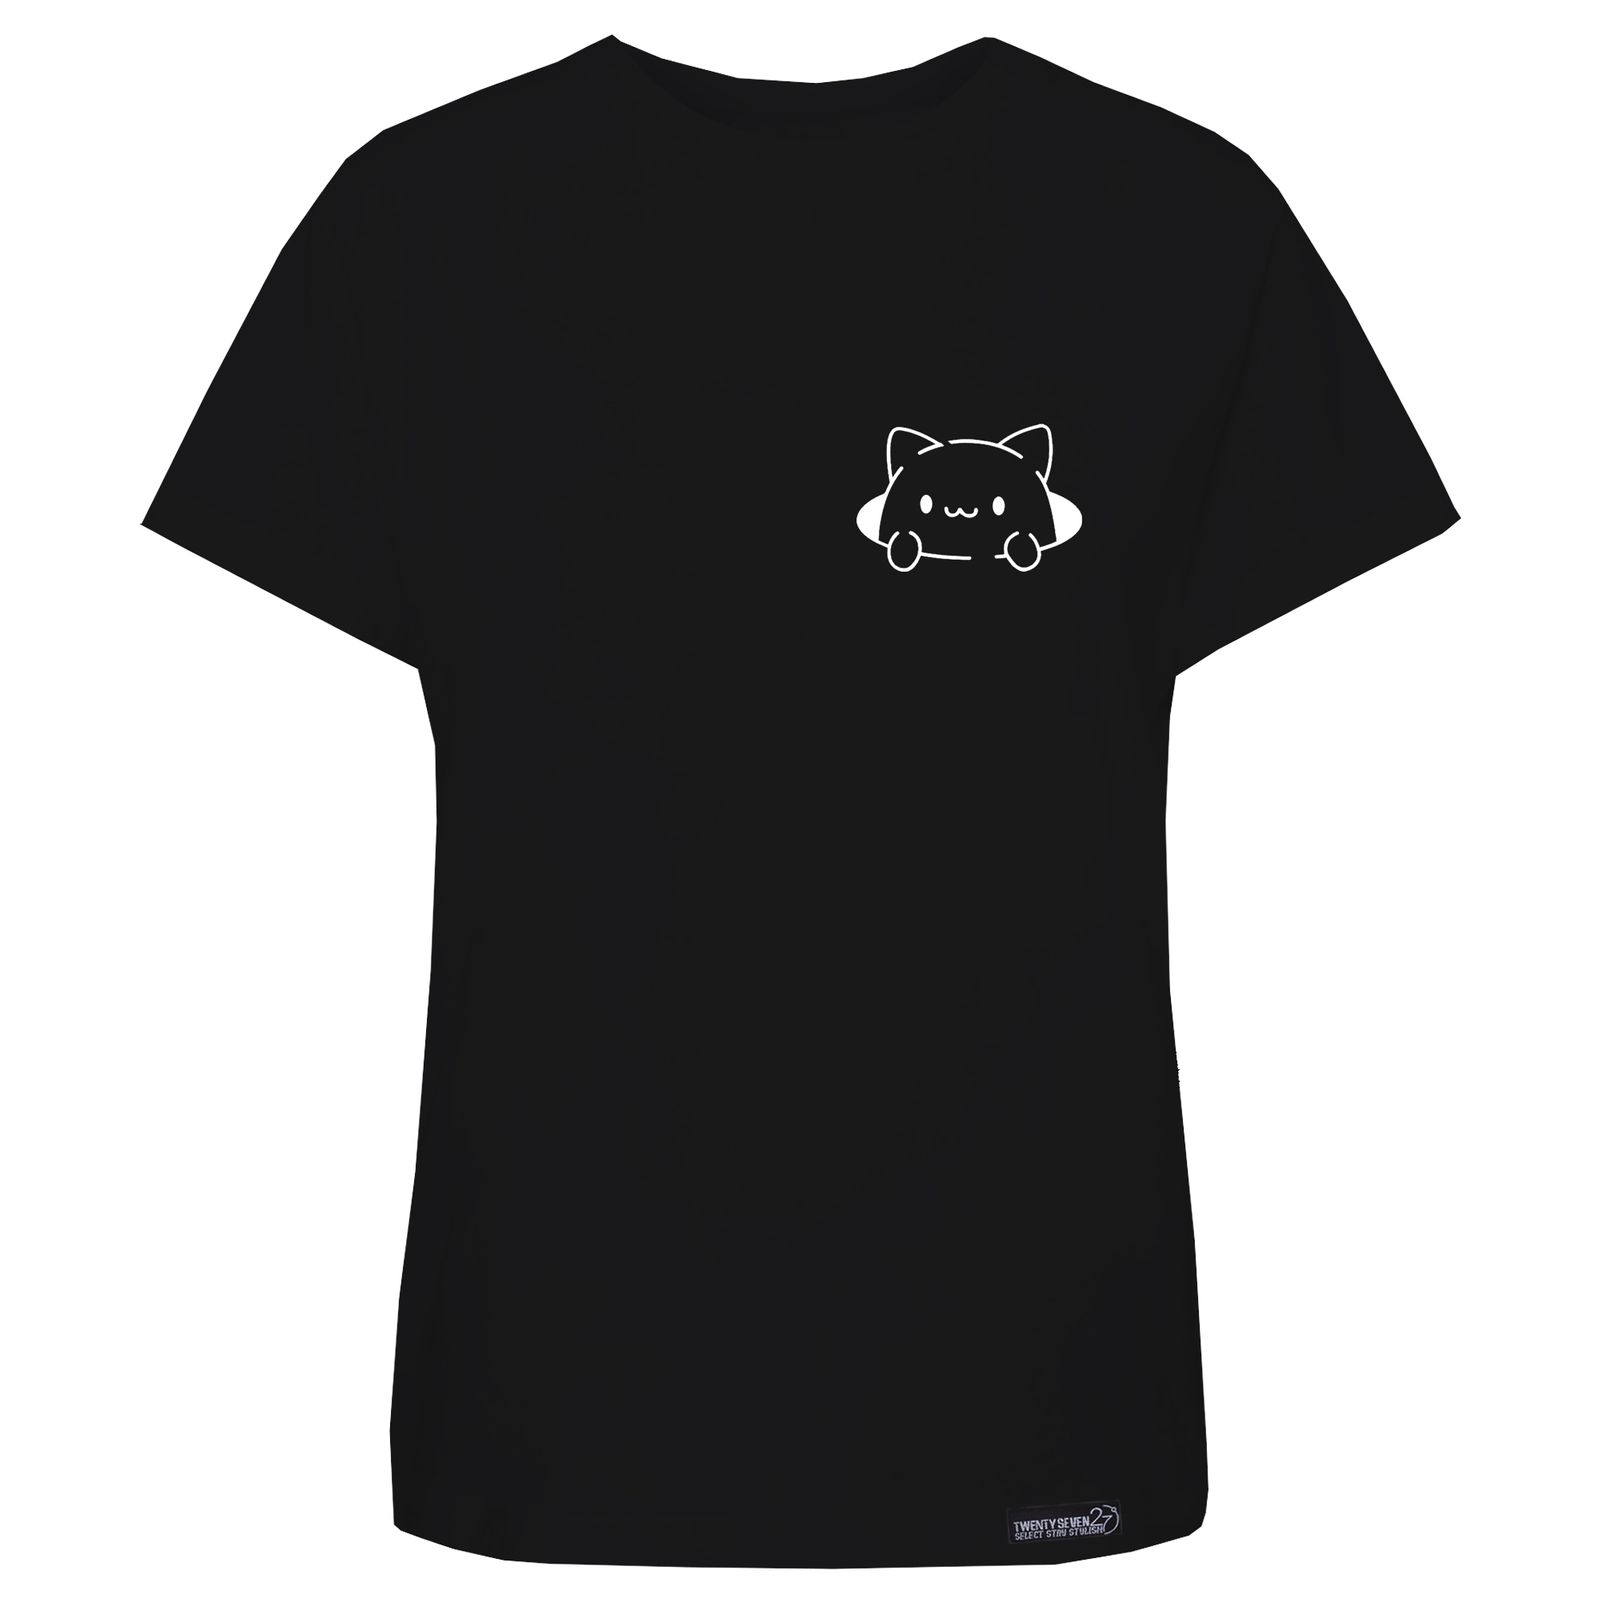 تی شرت آستین کوتاه زنانه 27 مدل  گربه کد WN1219 رنگ مشکی -  - 1